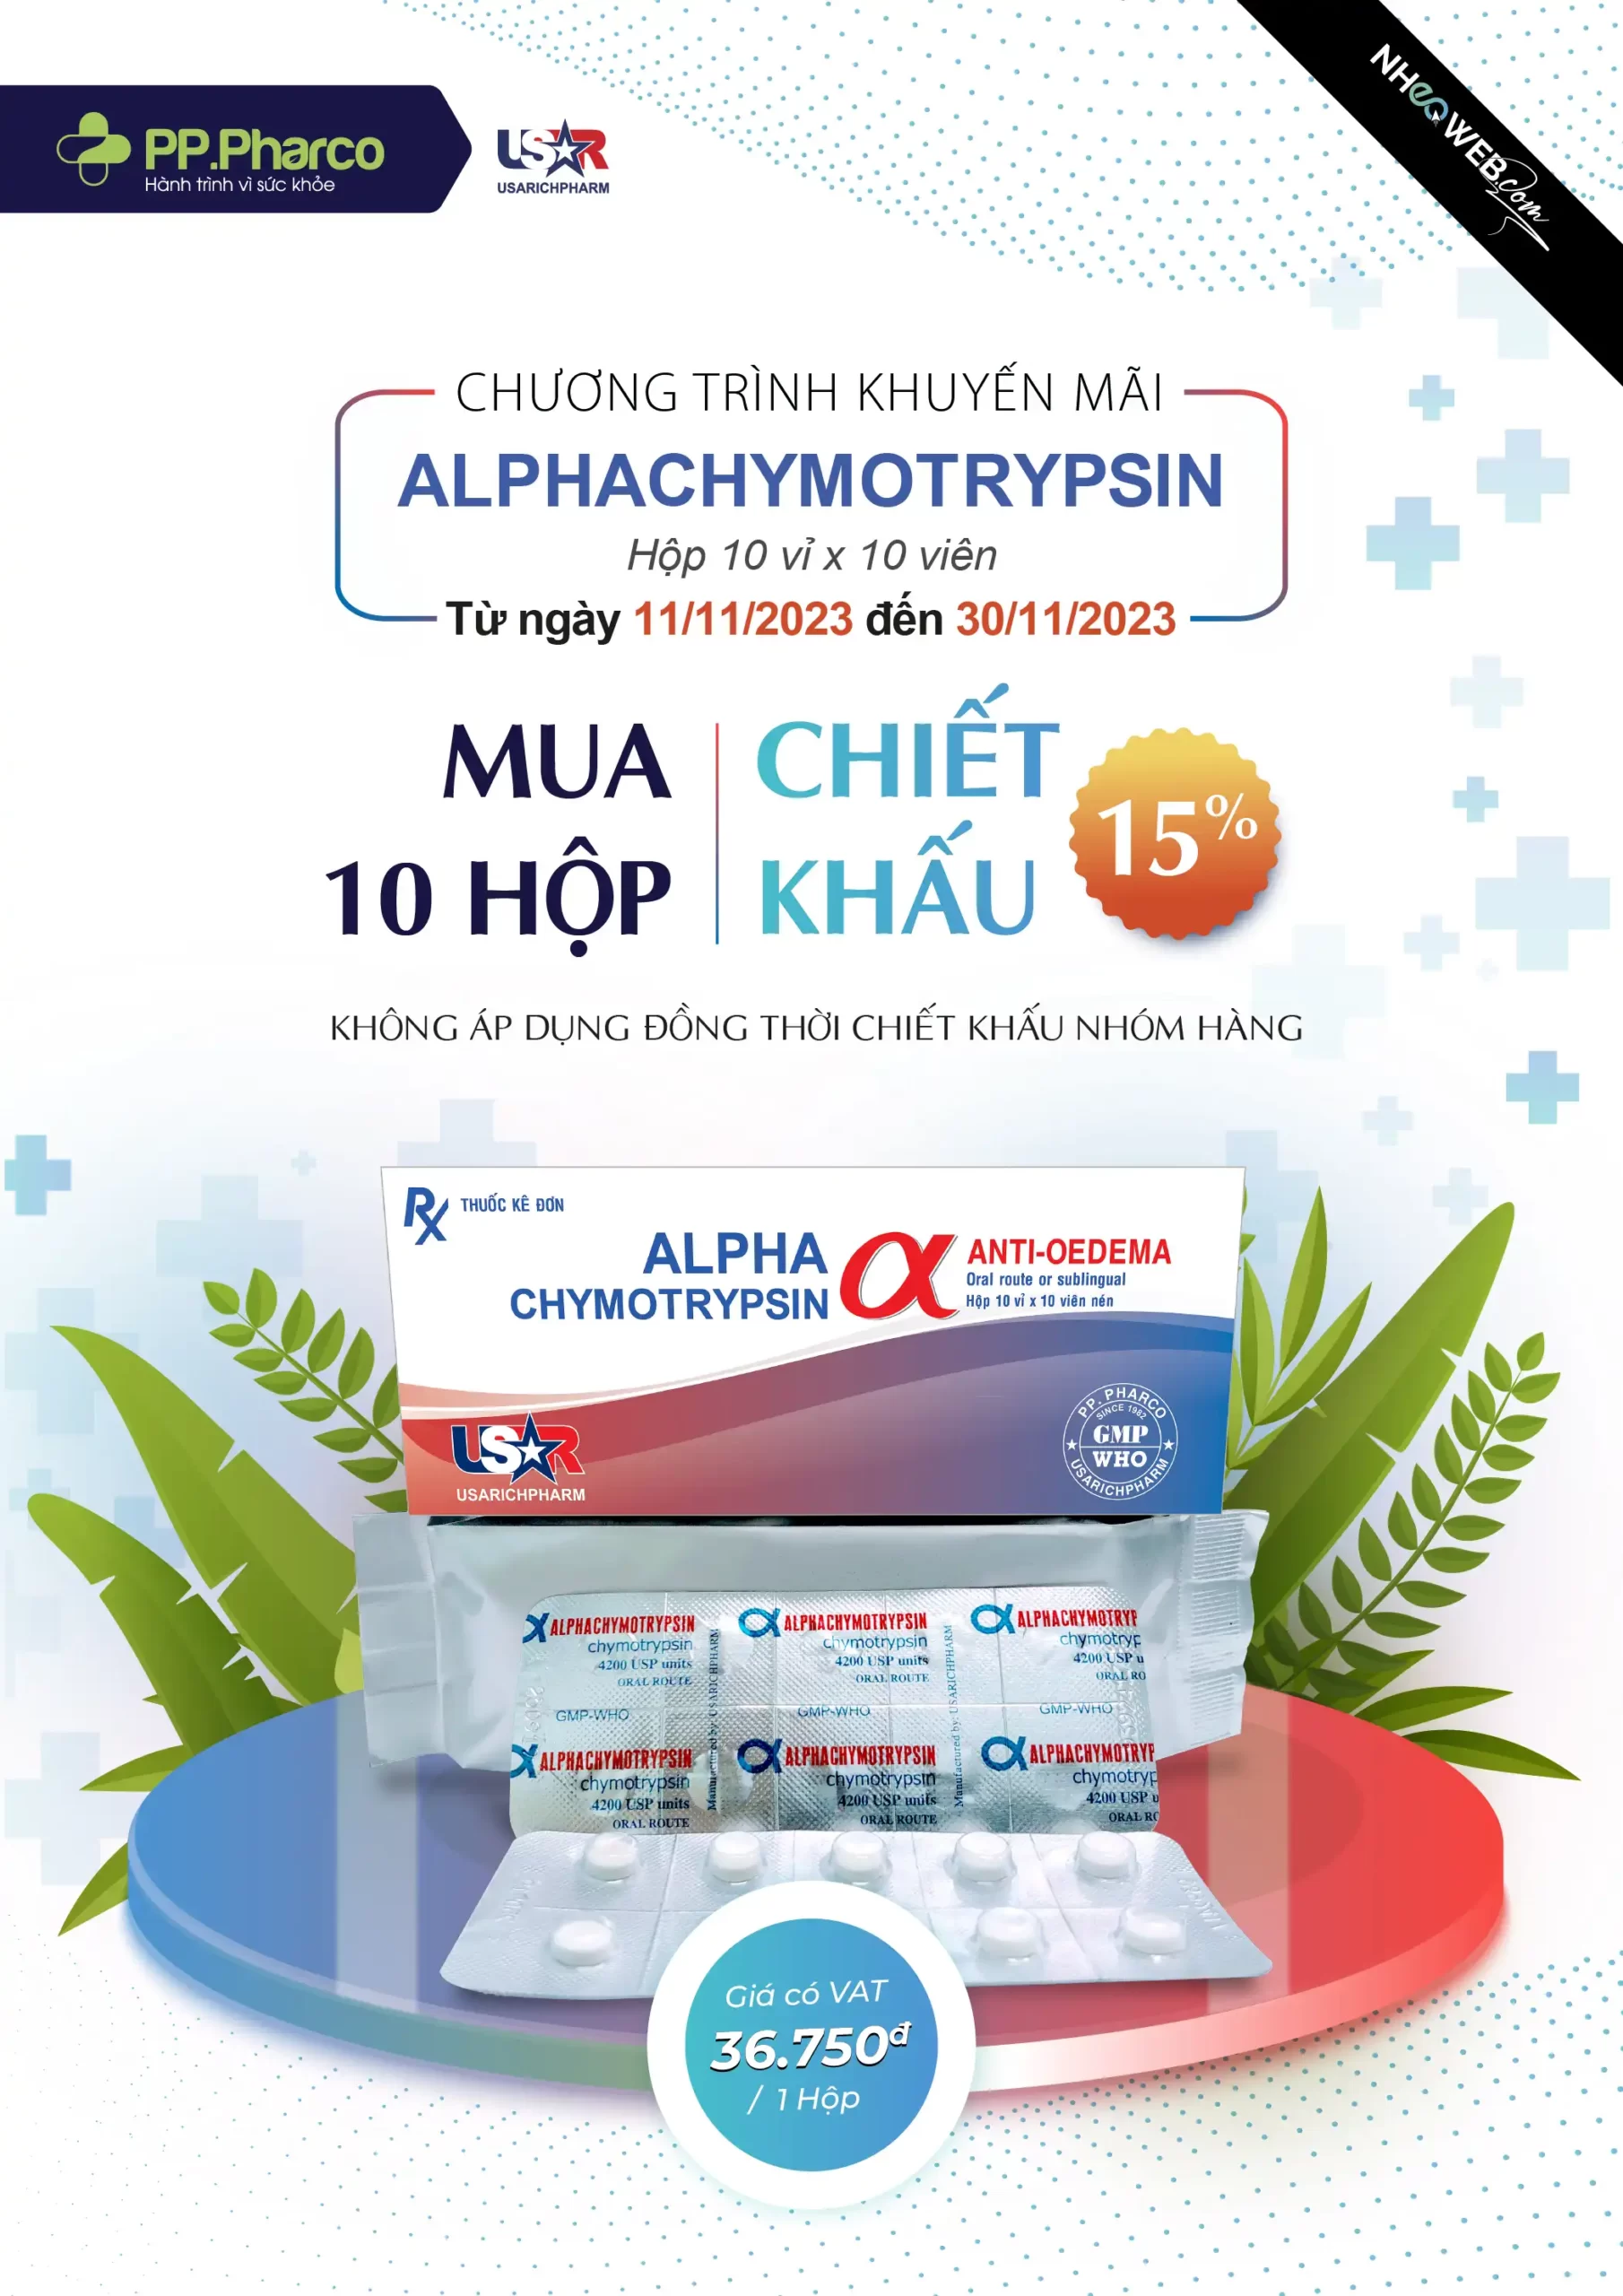 Chương trình khuyến mãi Alphachymotripsin – DPP